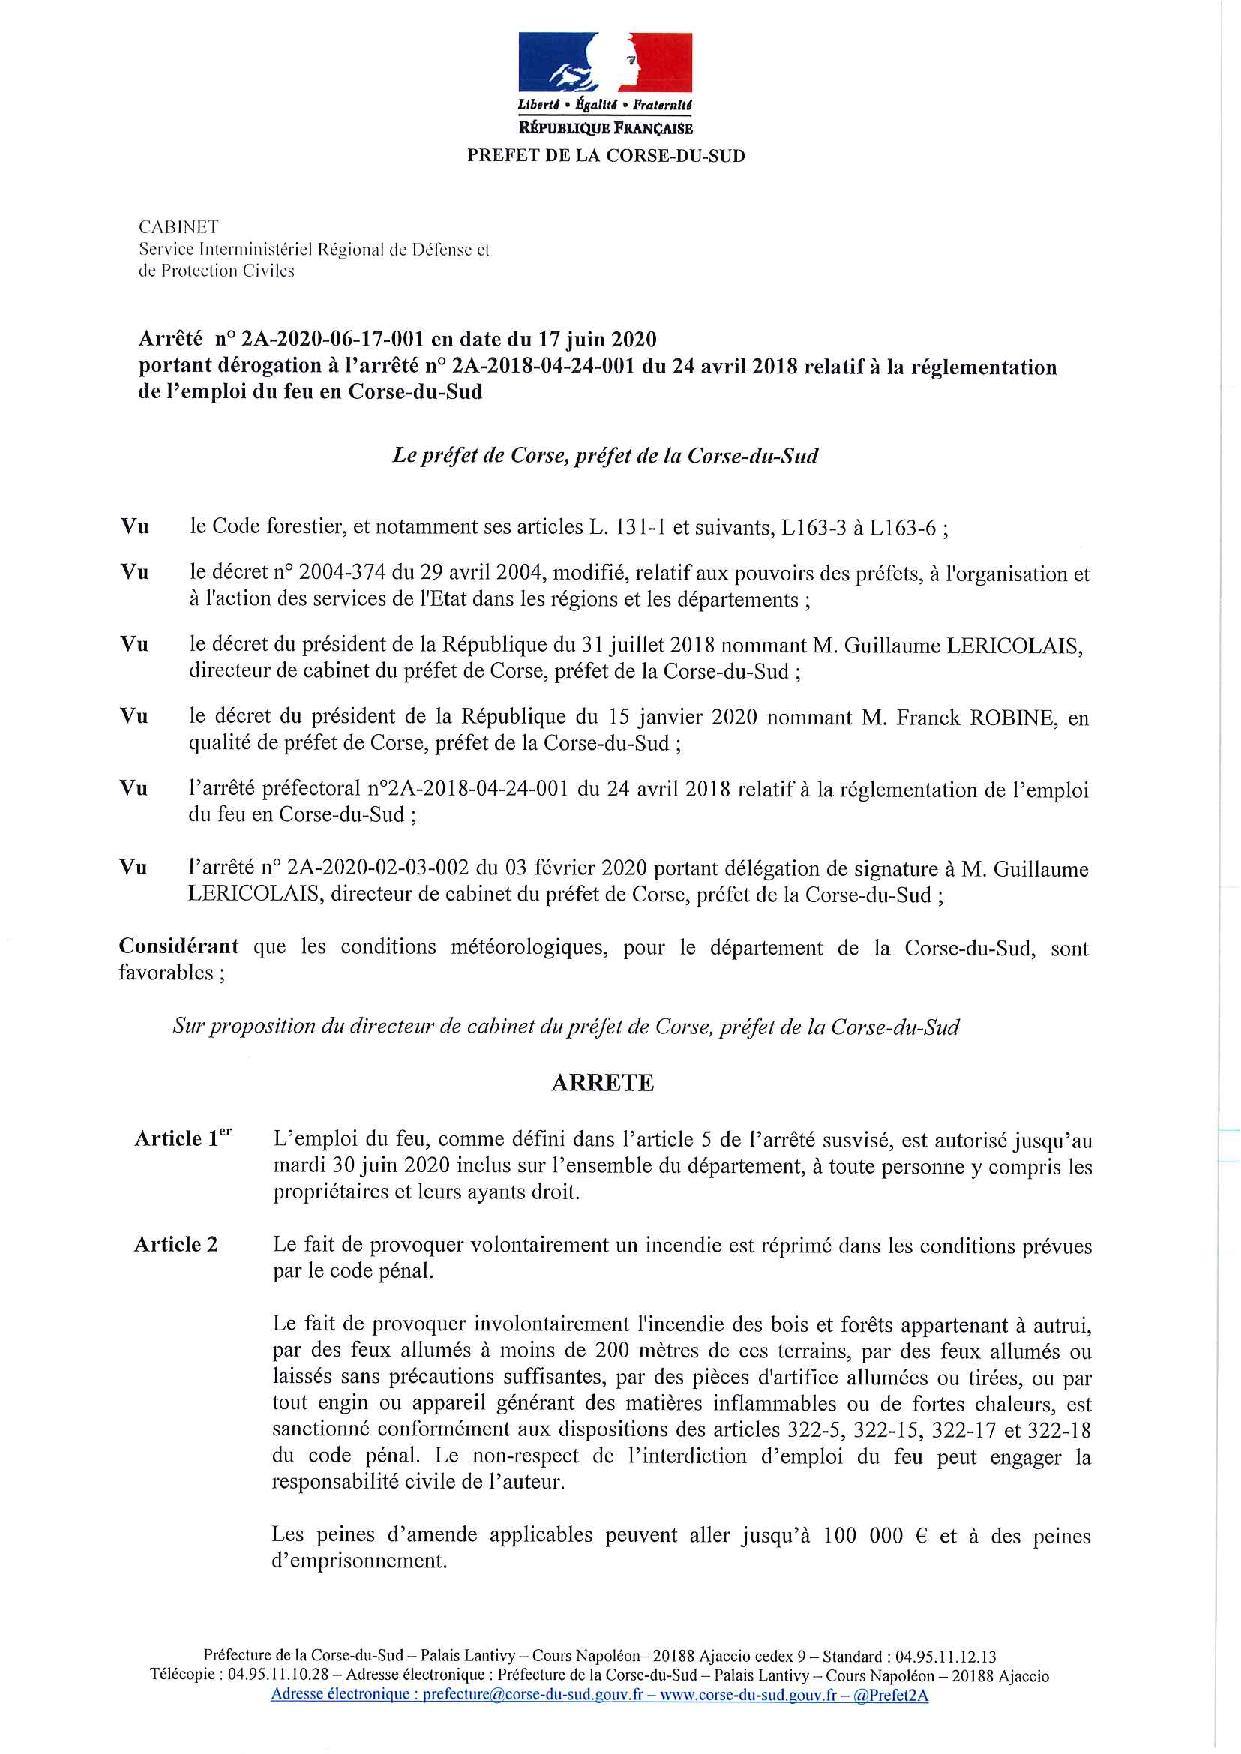 Arrêté préfectoral autorisation d'emploi du feu en Corse jusqu'au 30 juin inclus